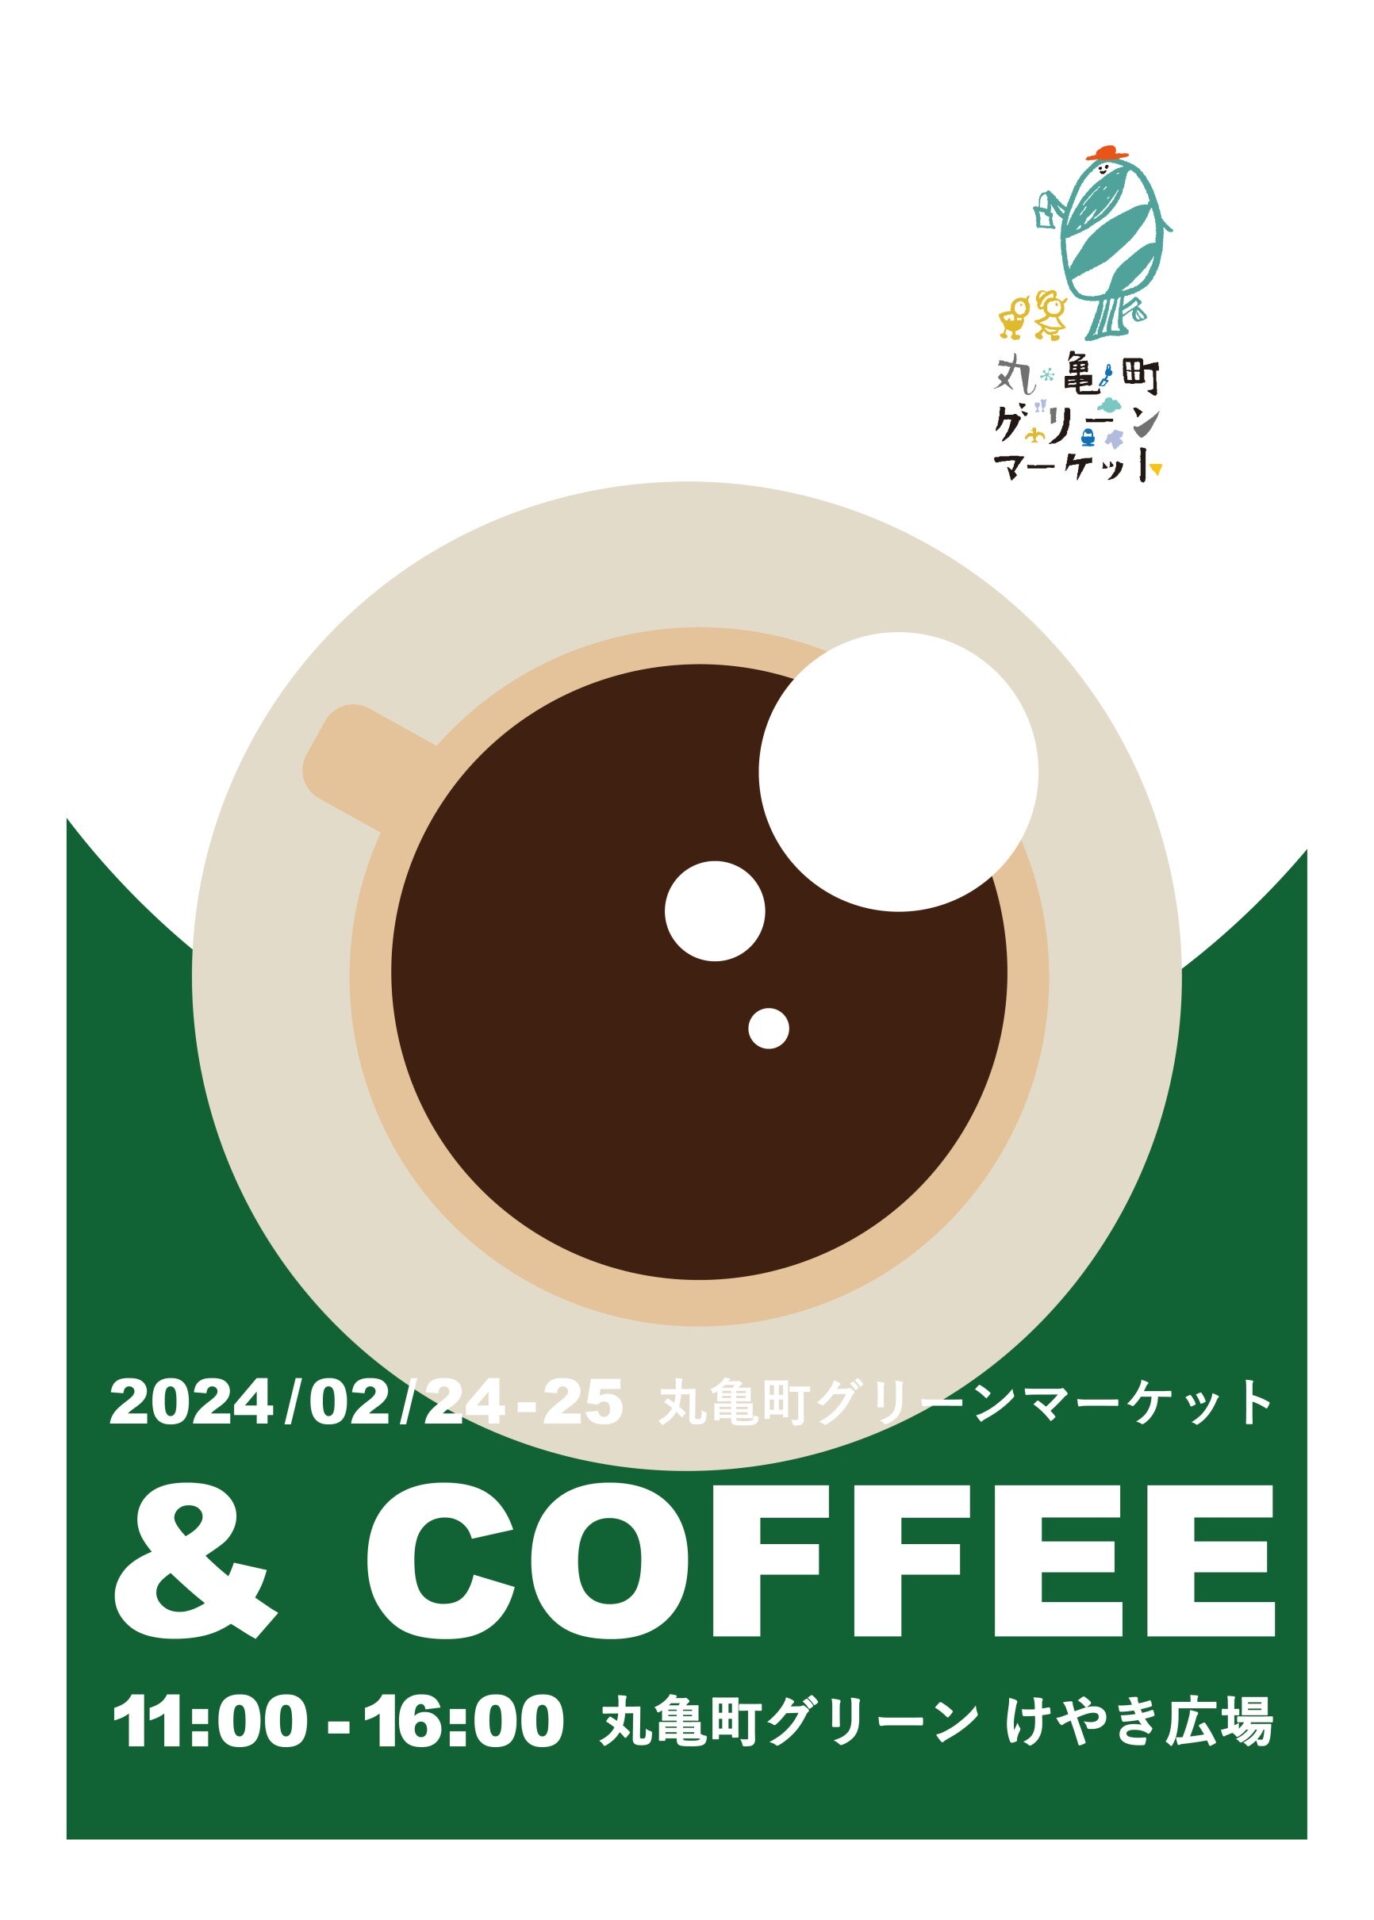 丸亀町グリーンマーケット&COFFEEのサムネイル画像